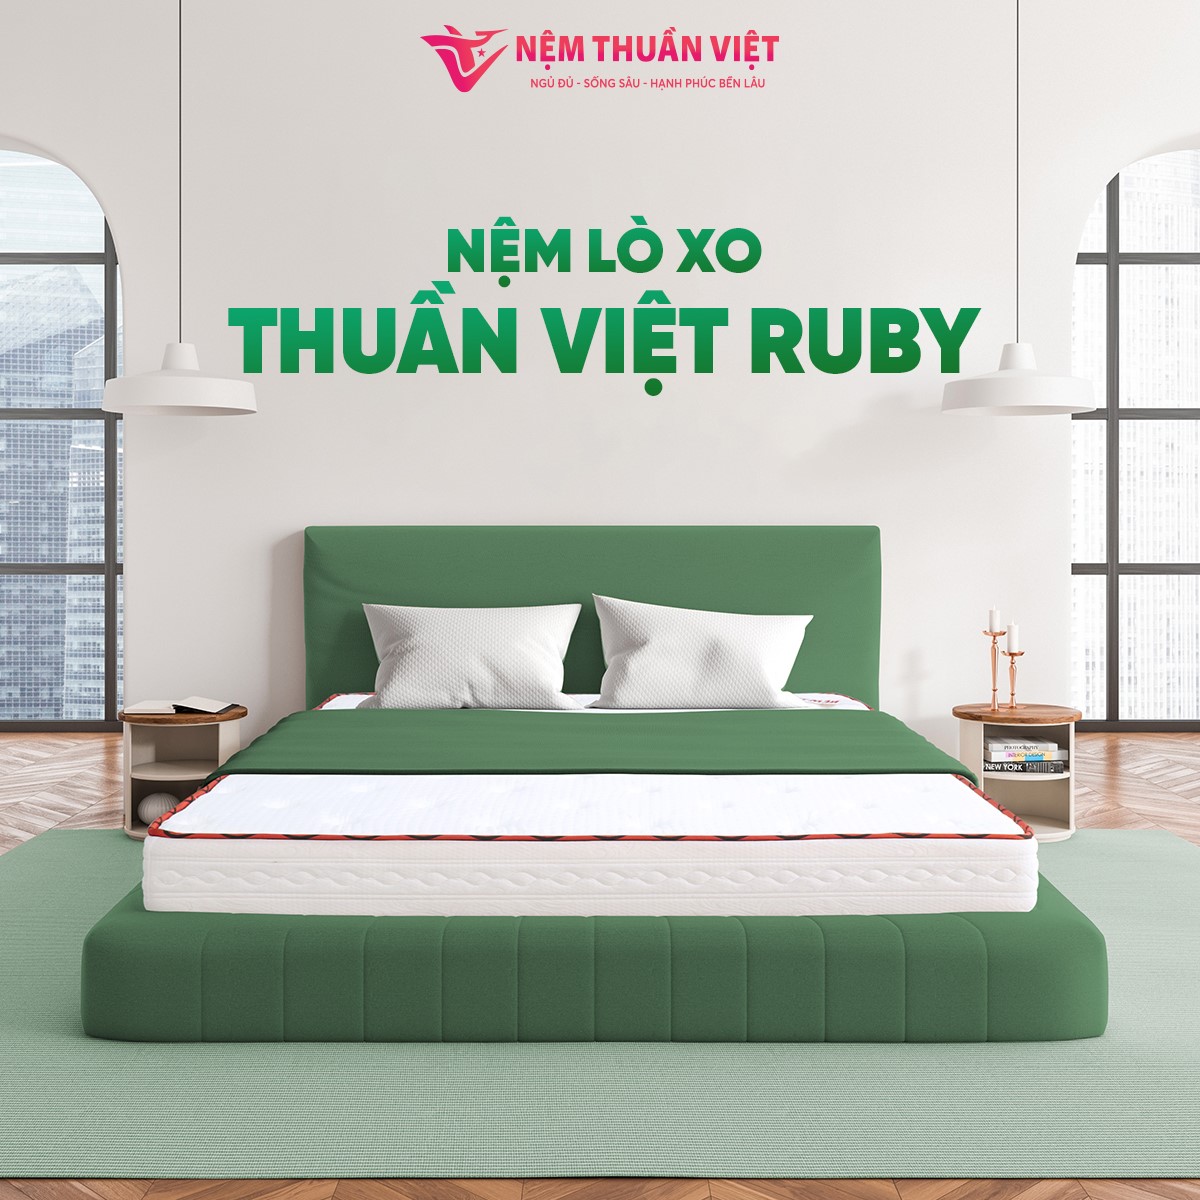 Nệm lò xo Thuần Việt: Sự đầu tư xứng đáng cho giấc ngủ của bạn - Ảnh 2